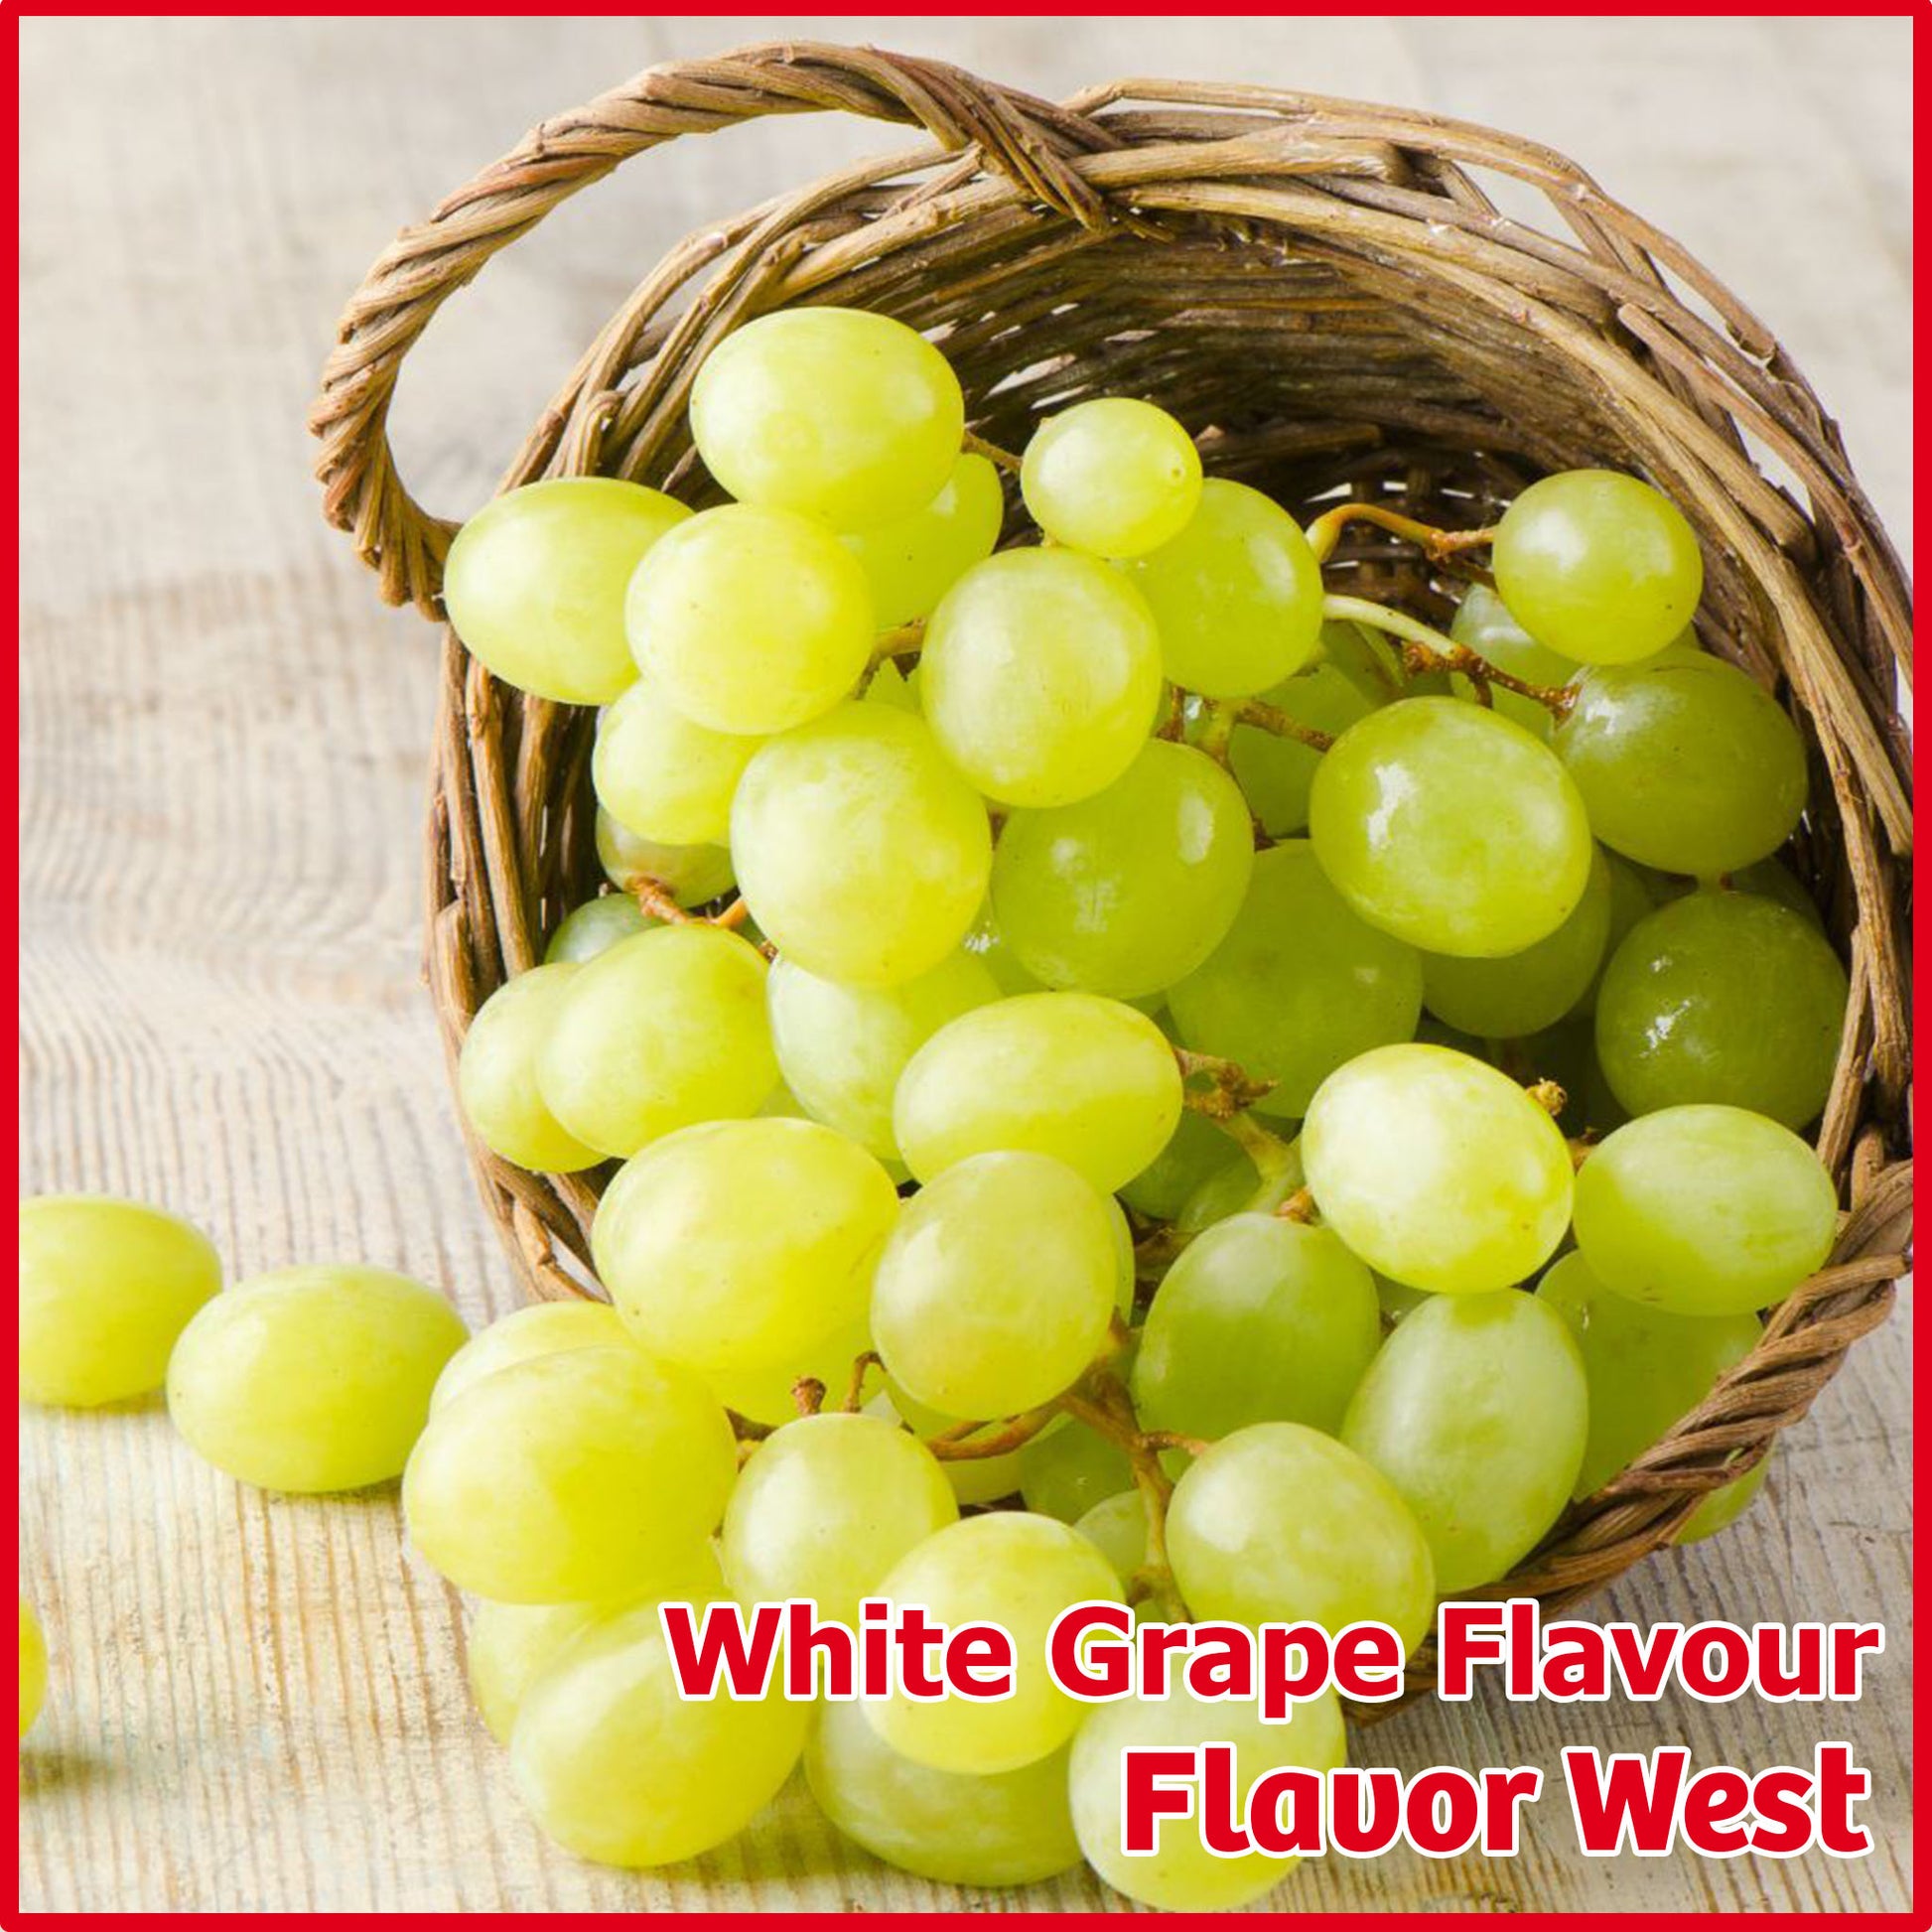 White Grape Flavour - Flavor West - Flavour Fog - Canada's flavour depot.